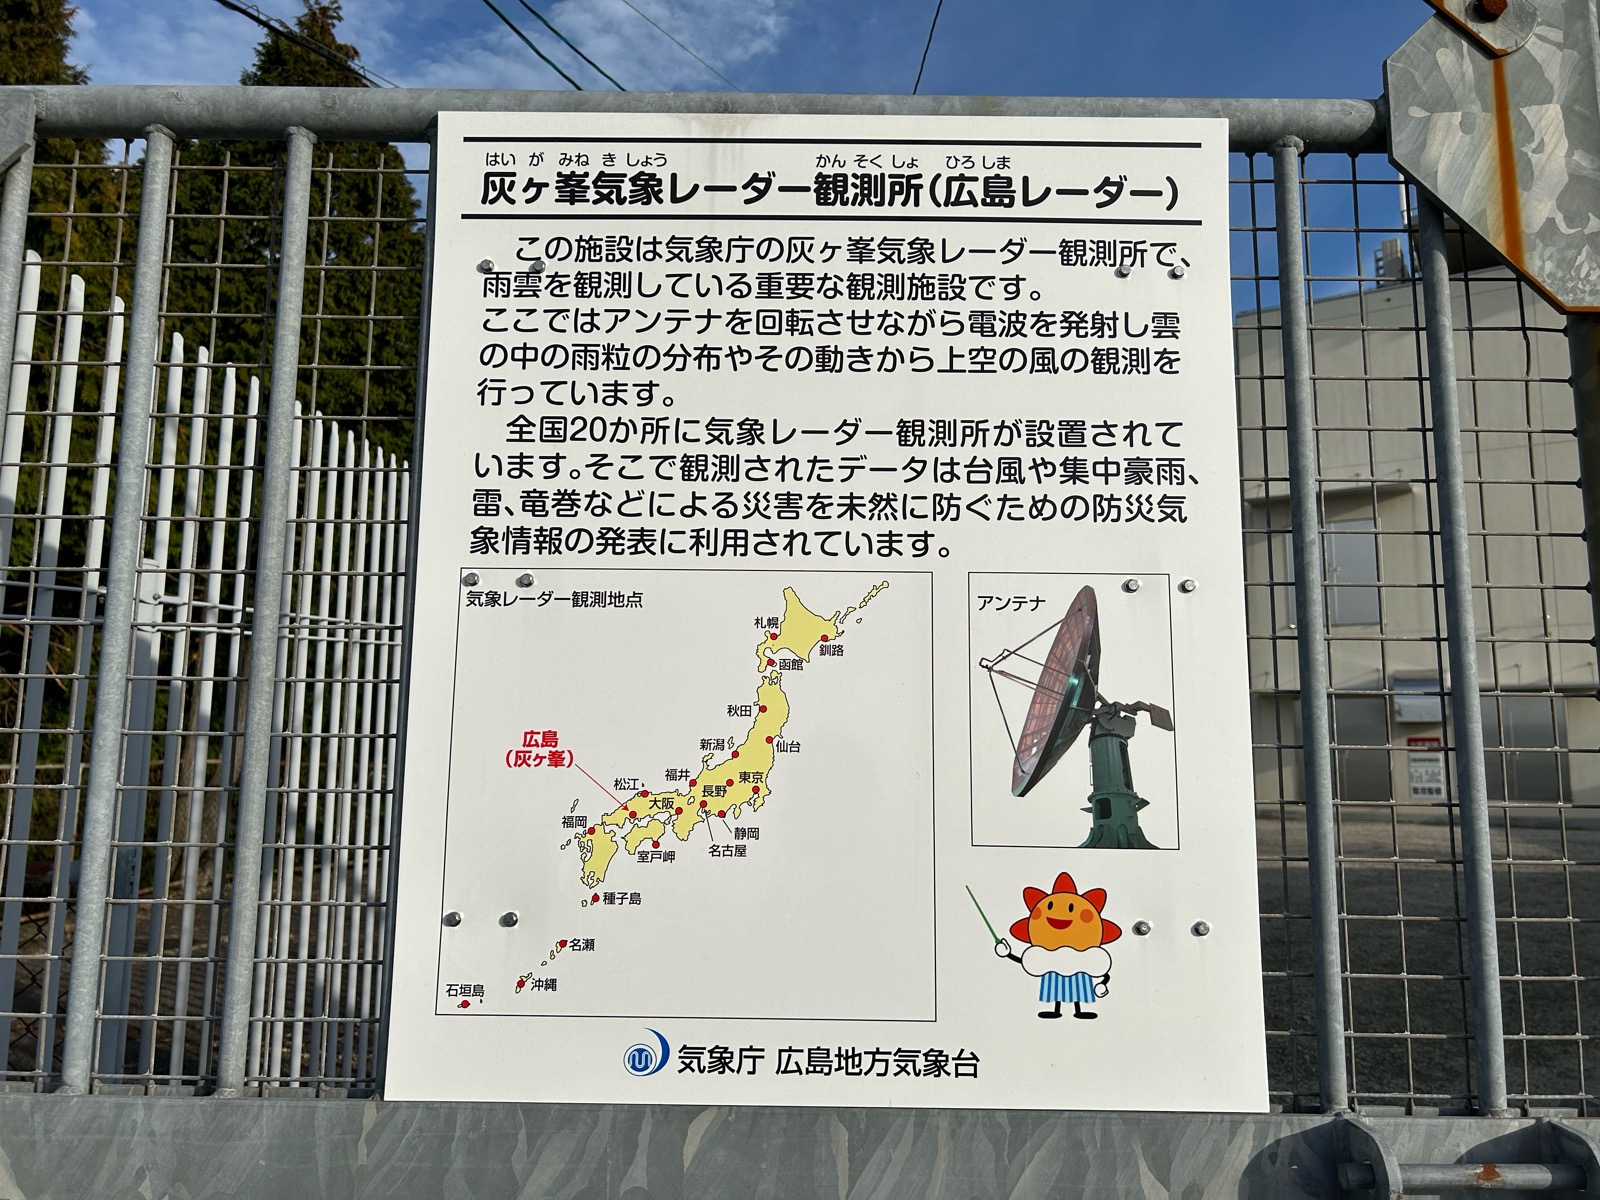 灰ヶ峰展望台 気象レーダー観測所(広島レーダー)